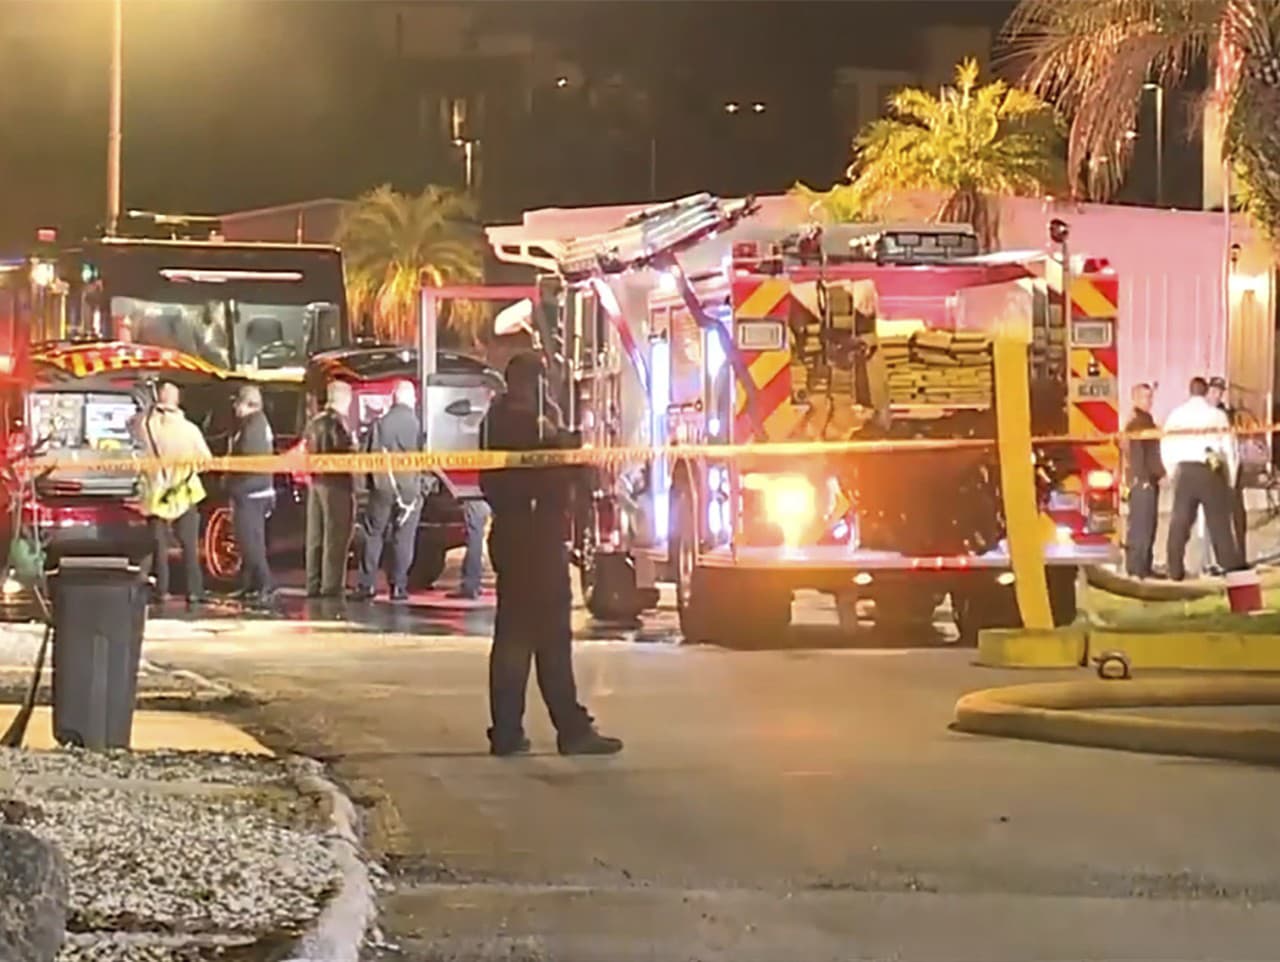 Na snímke z videozáznamu je vidieť hasičské auto, hasičov a ďalších príslušníkov polície na mieste havárie malého lietadla v meste Clearwater na Floride 